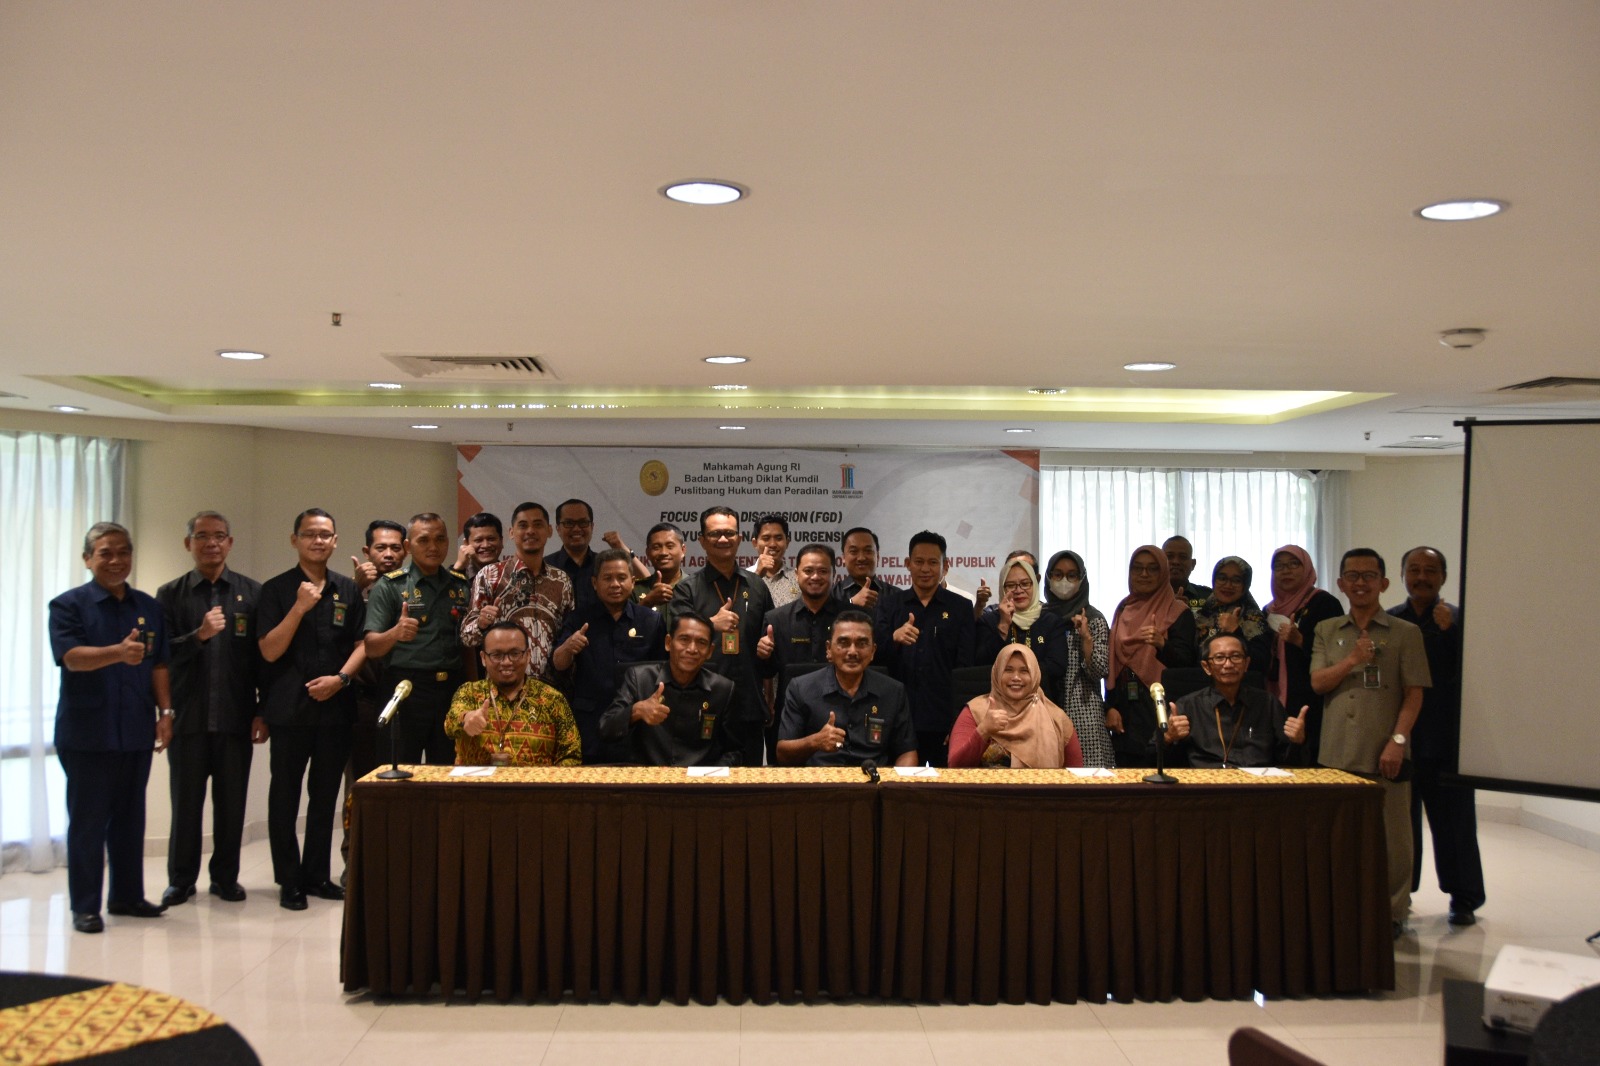 Pengadilan Negeri Yogyakarta Mengikuti FGD dalam Rangka Penyusunan Naskah Urgensi Tahun Anggaran 2023